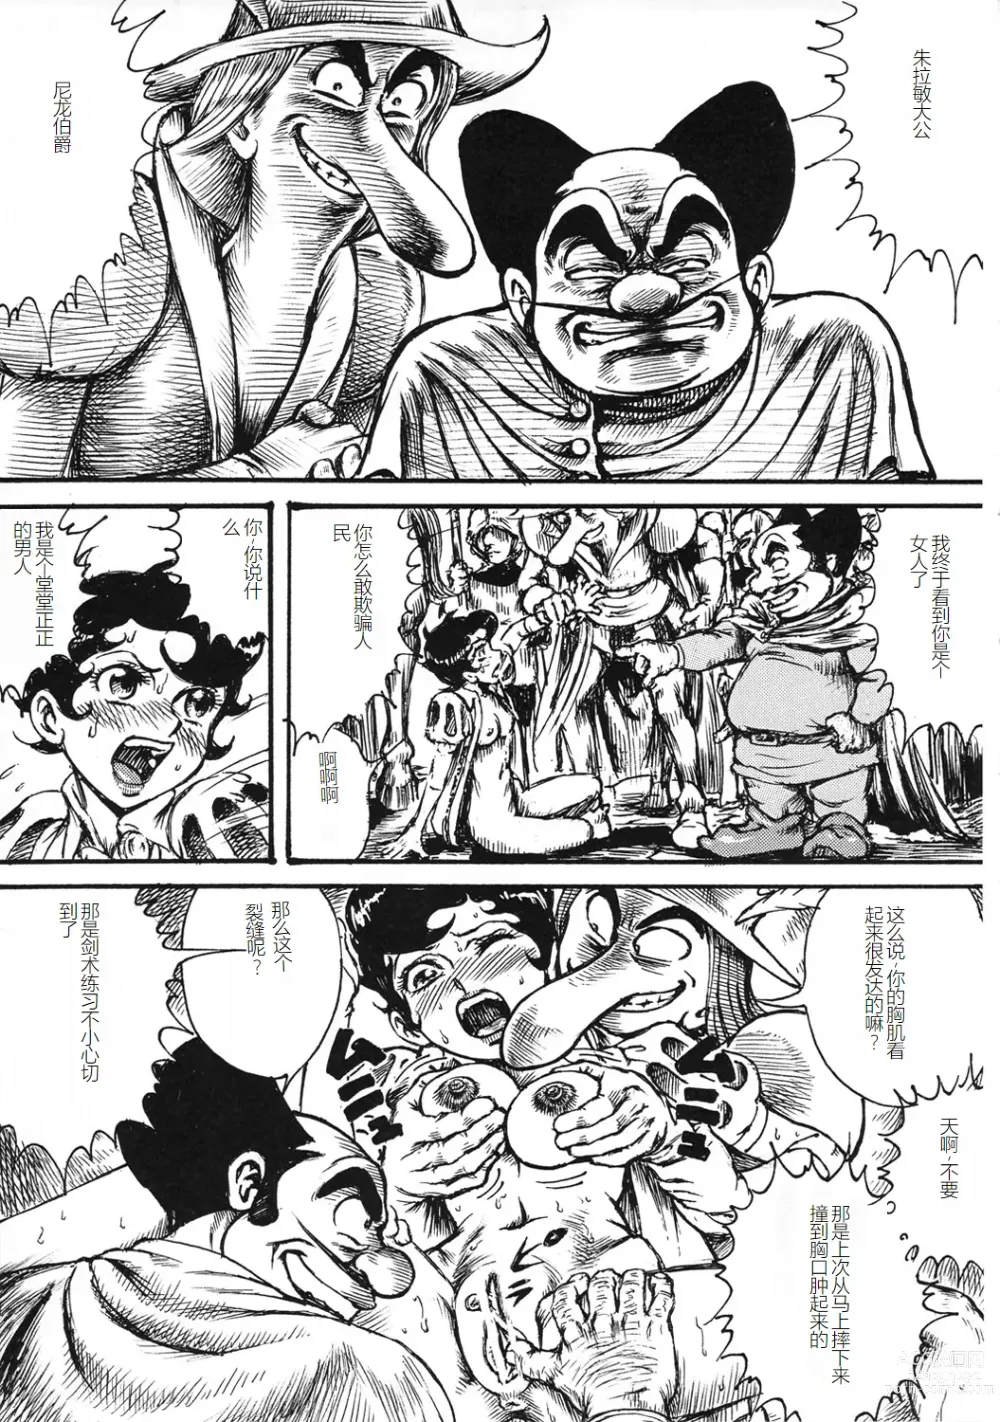 Page 26 of doujinshi Youjinbou Otaku Matsuri 8